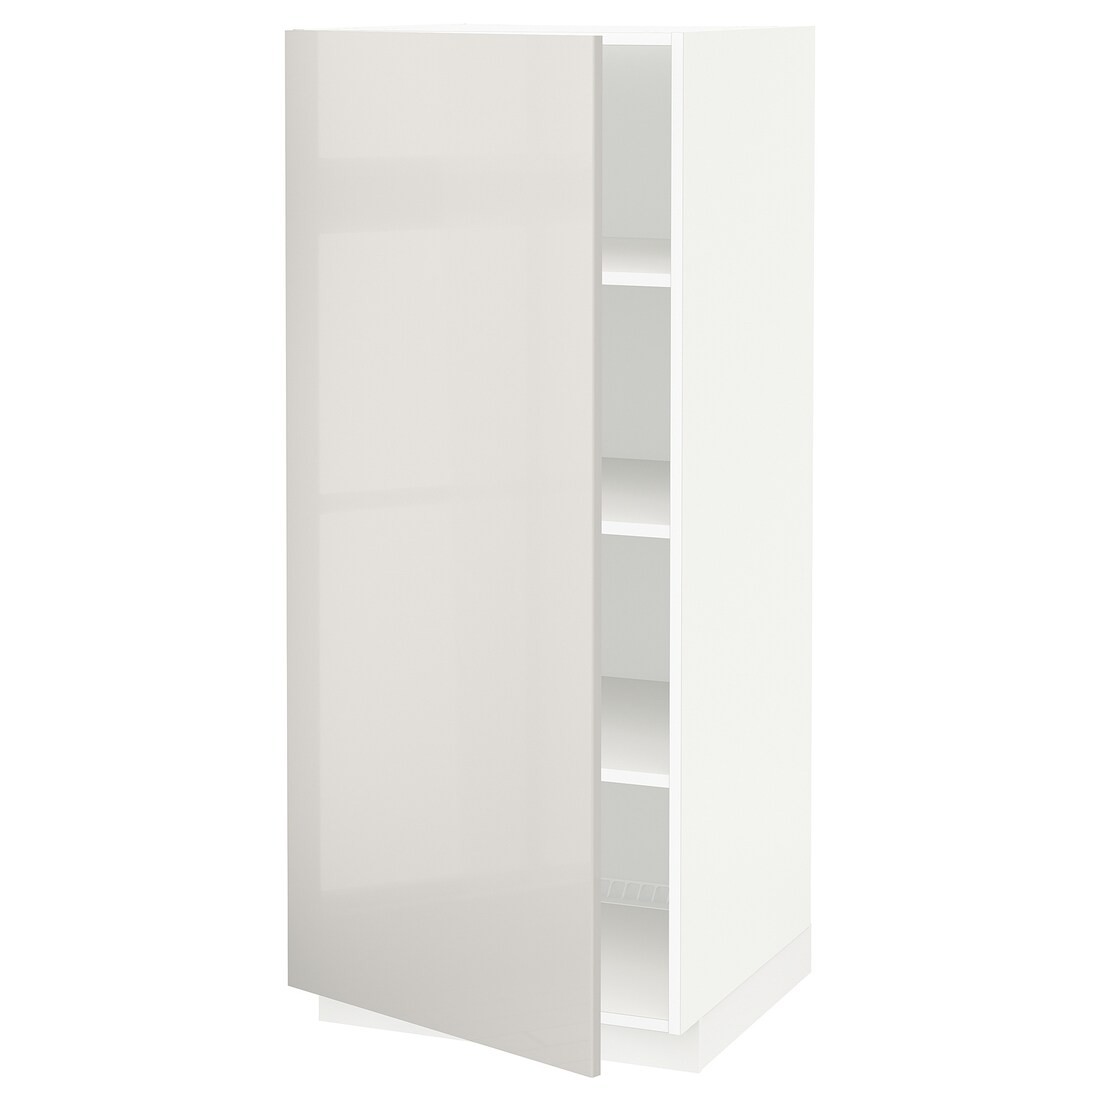 METOD МЕТОД Высокий шкаф с полками, белый / Ringhult светло-серый, 60x60x140 см